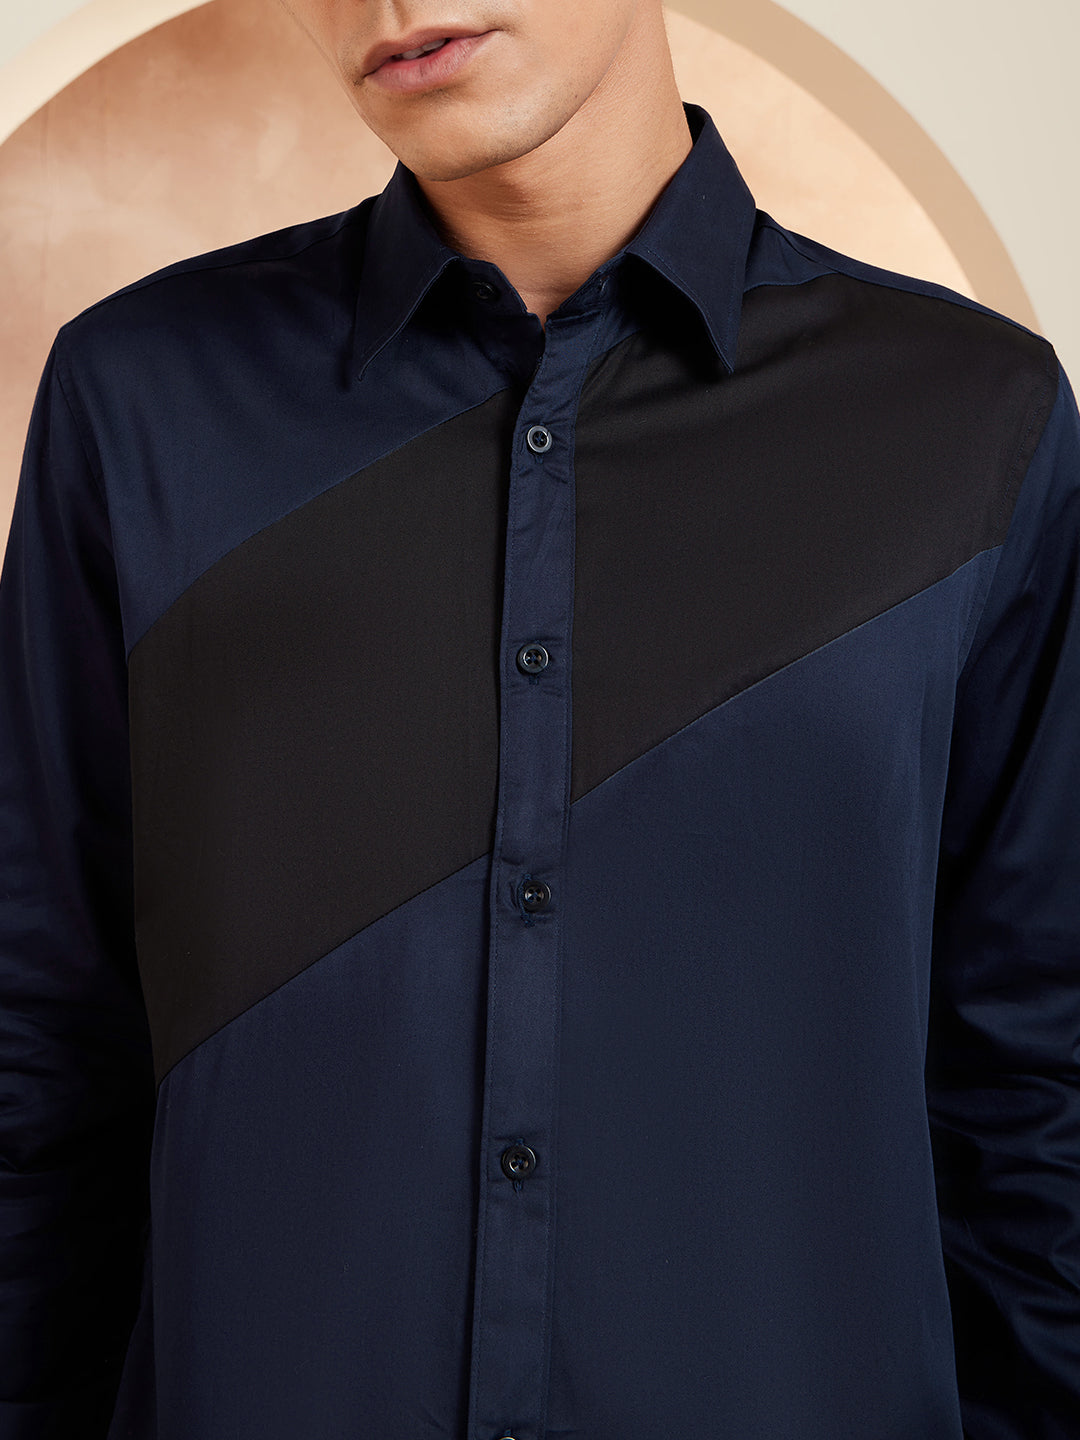 DENNISON Smart Colorblocked Cotton Casual Shirt